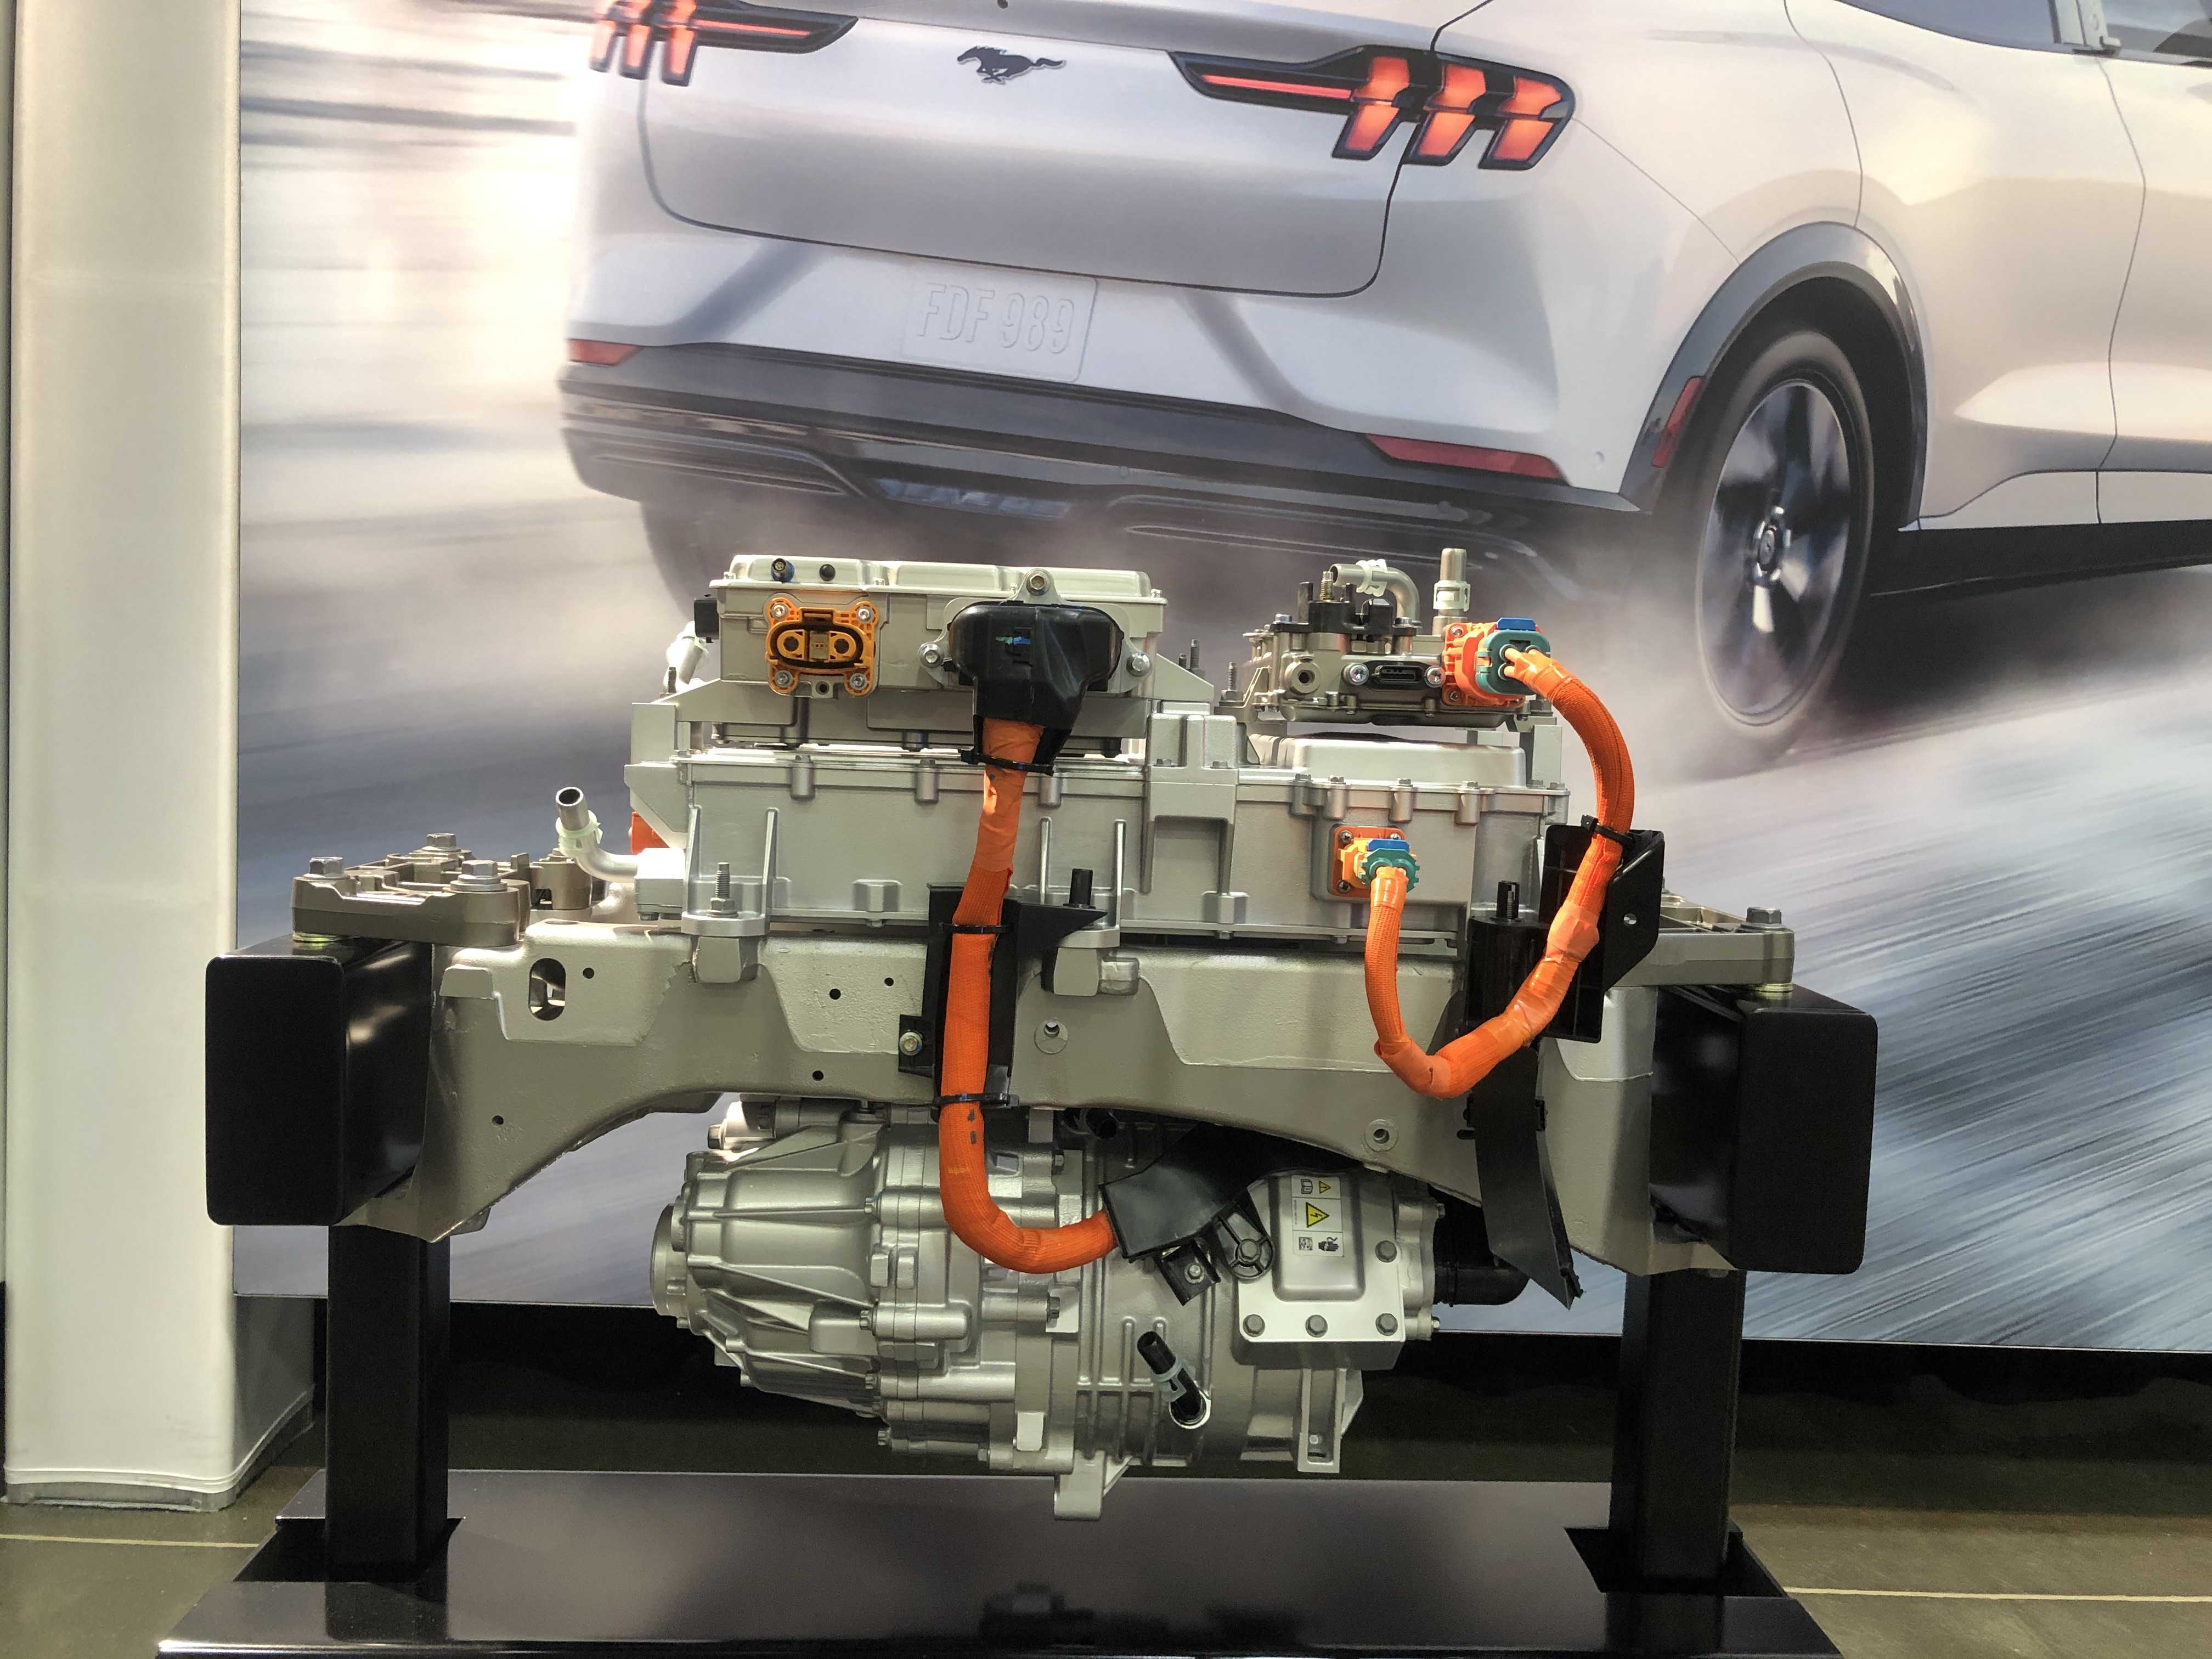 Ford mustang mach-e 2021: электромобиль с гоночными скоростными характеристиками